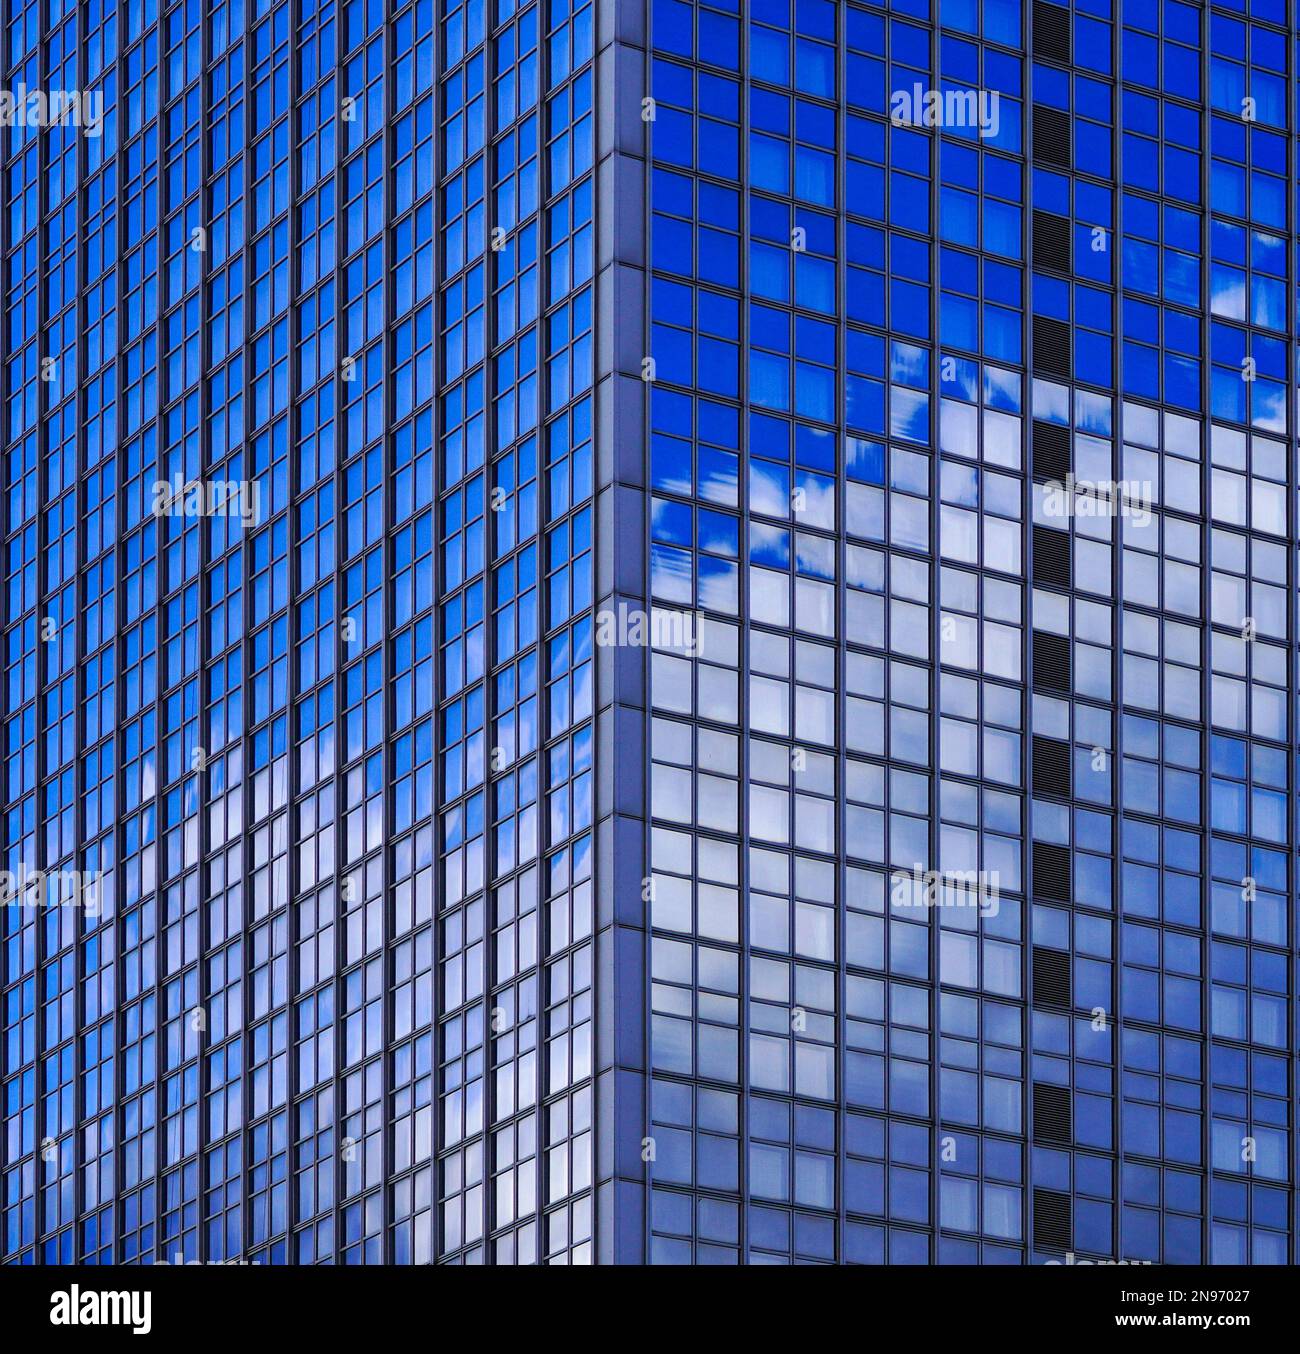 Berlin Alexanderplatz Mitte Architekur Bau Himmel Spiegelung Glasfassade Stock Photo